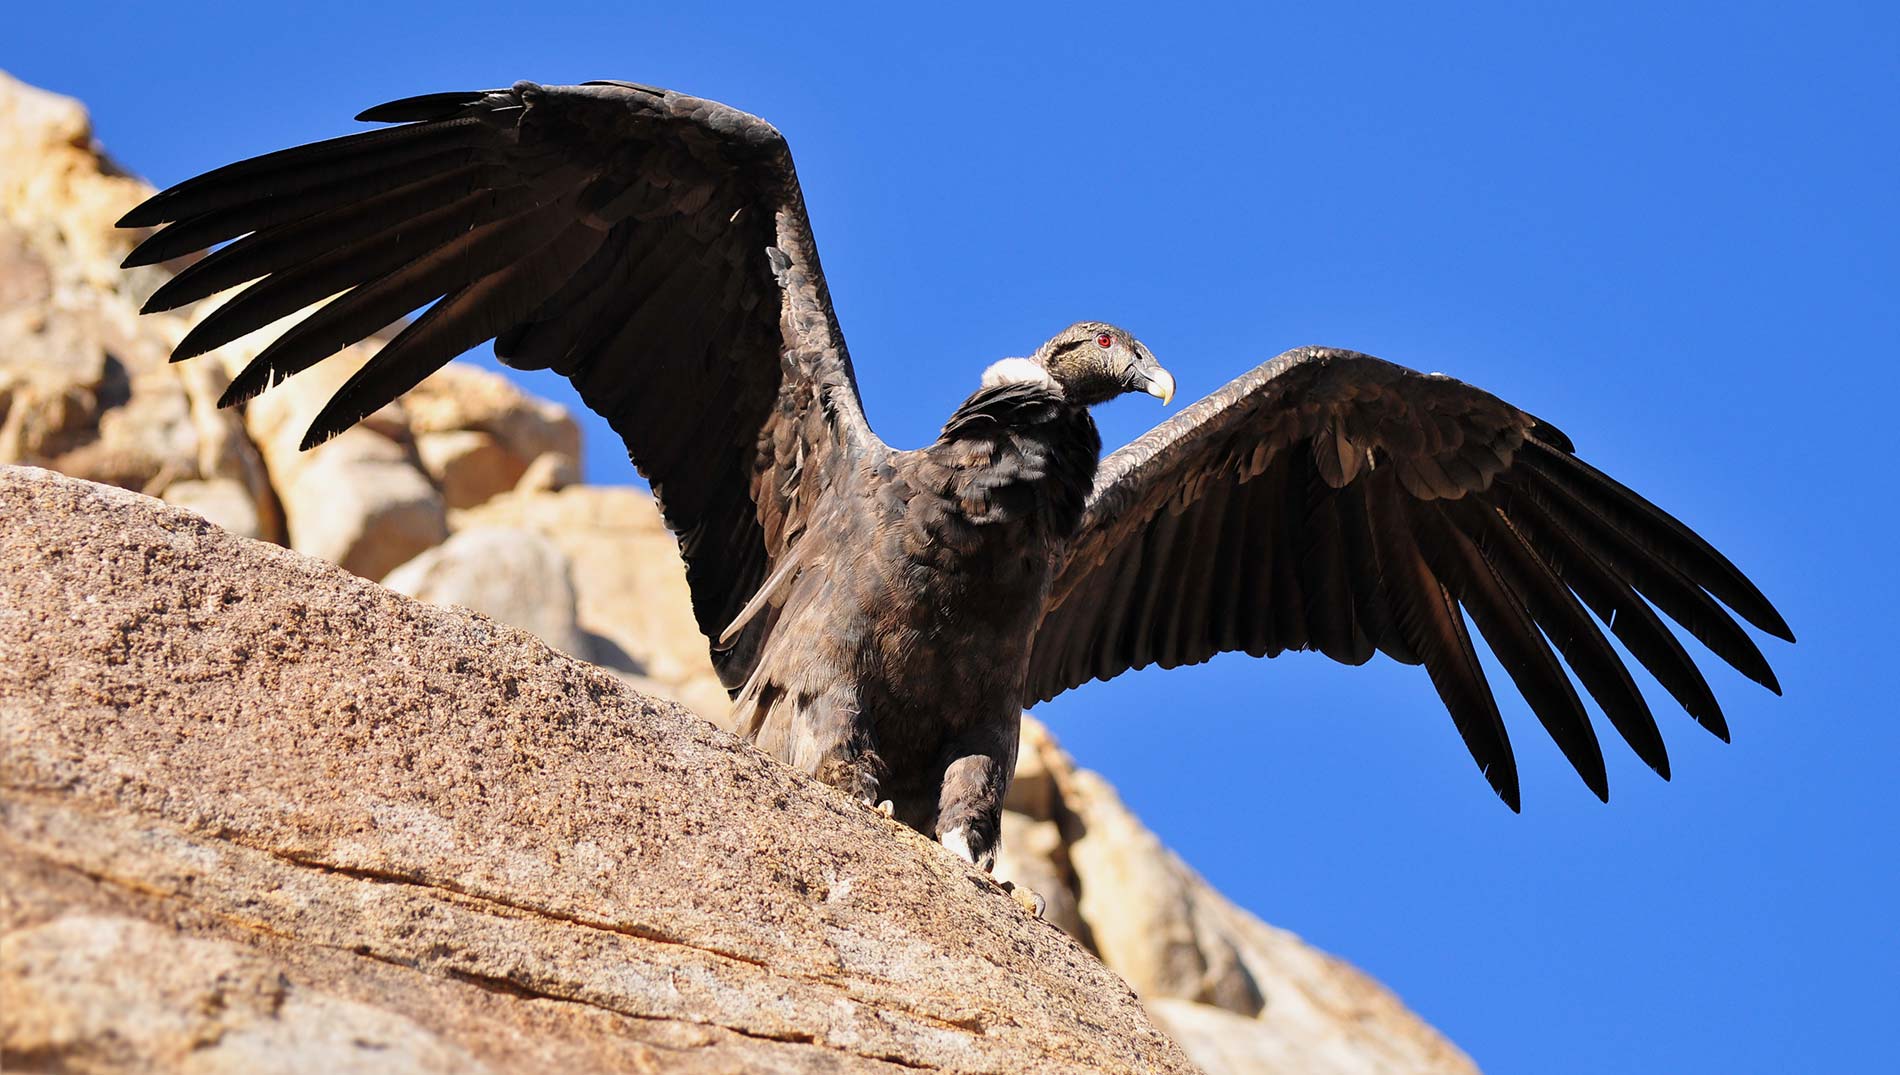 The condor of Las Arenas Valley